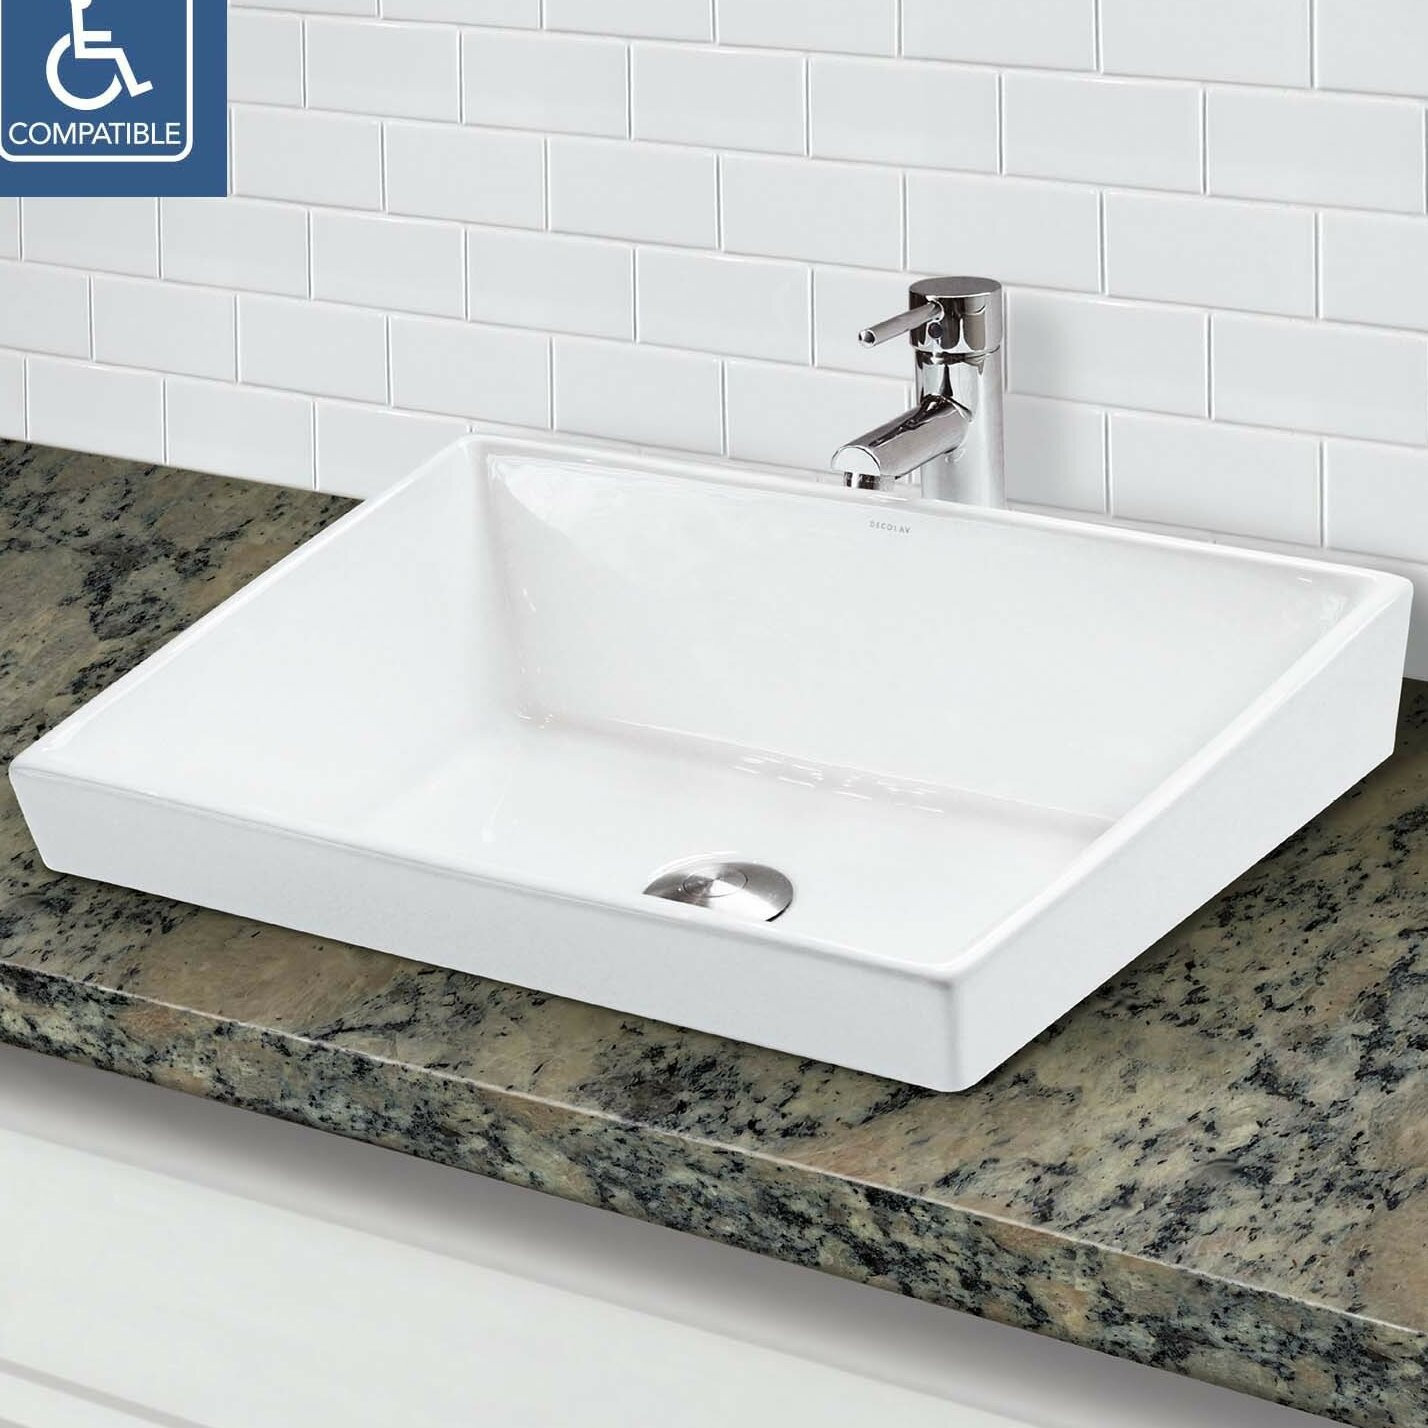 Semi Recessed Bathroom Sink
 DECOLAV Classically Redefined Rectangular Semi Recessed